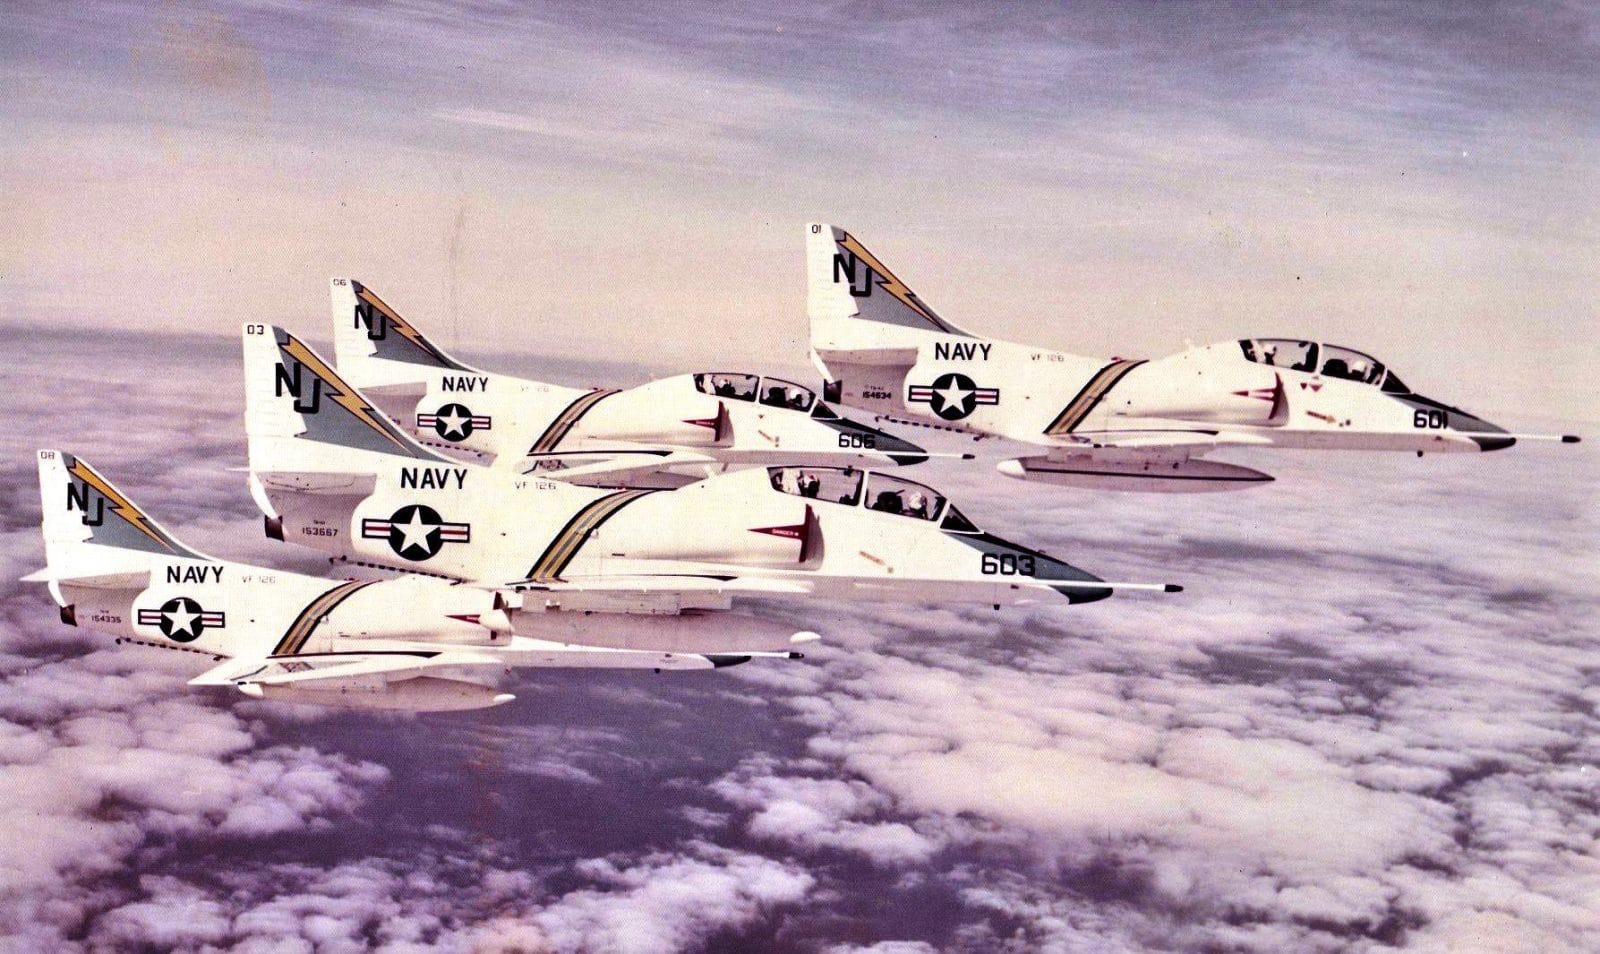 VF-126 TA-4Js before the F-14 Tomcat.